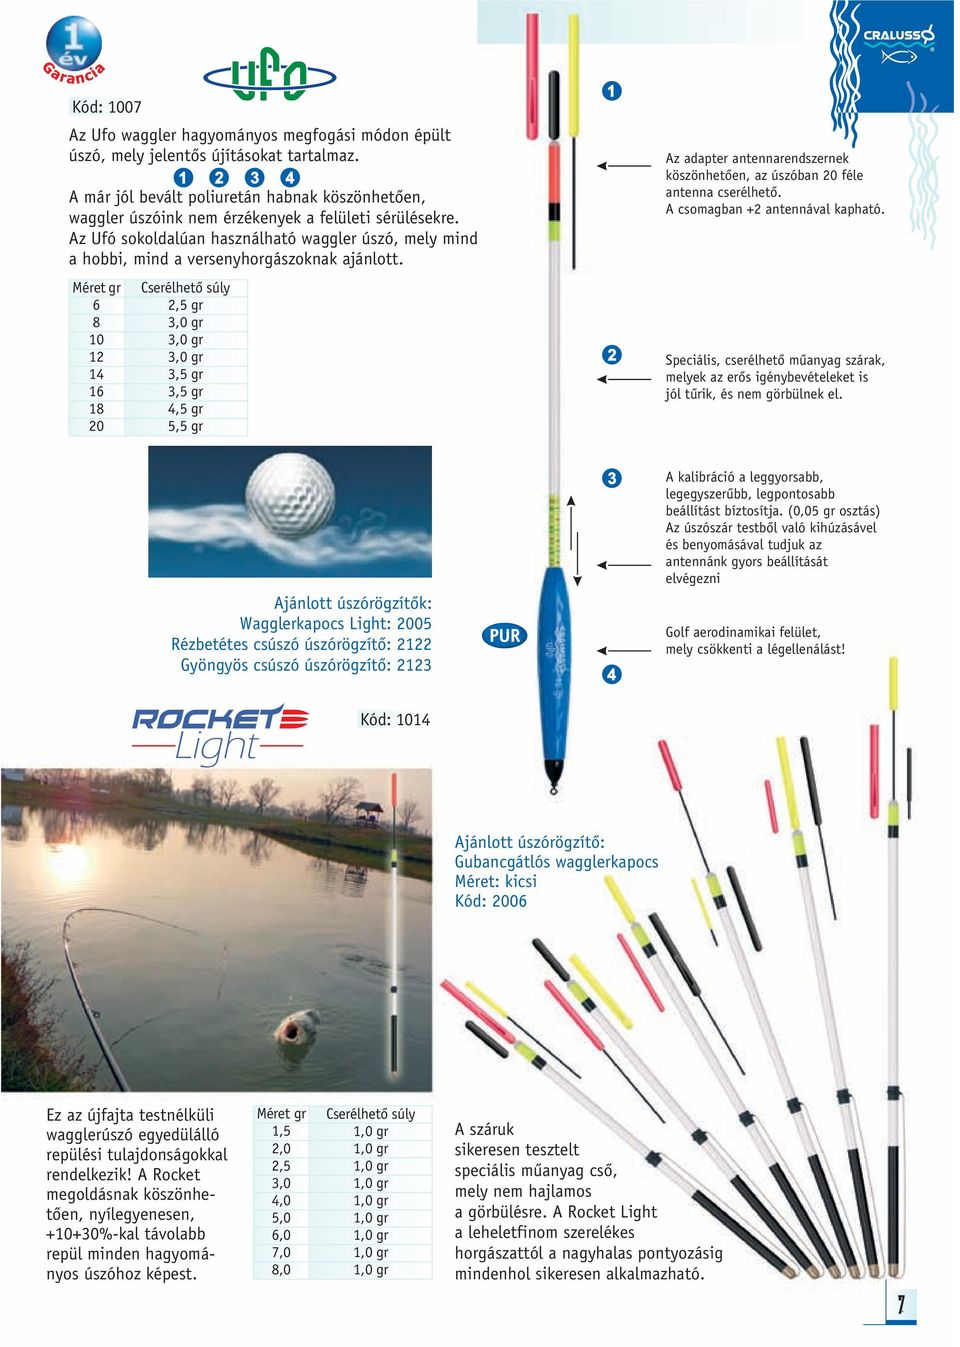 Az Ufó sokoldalúan használható waggler úszó, mely mind a hobbi, mind a versenyhorgászoknak ajánlott.